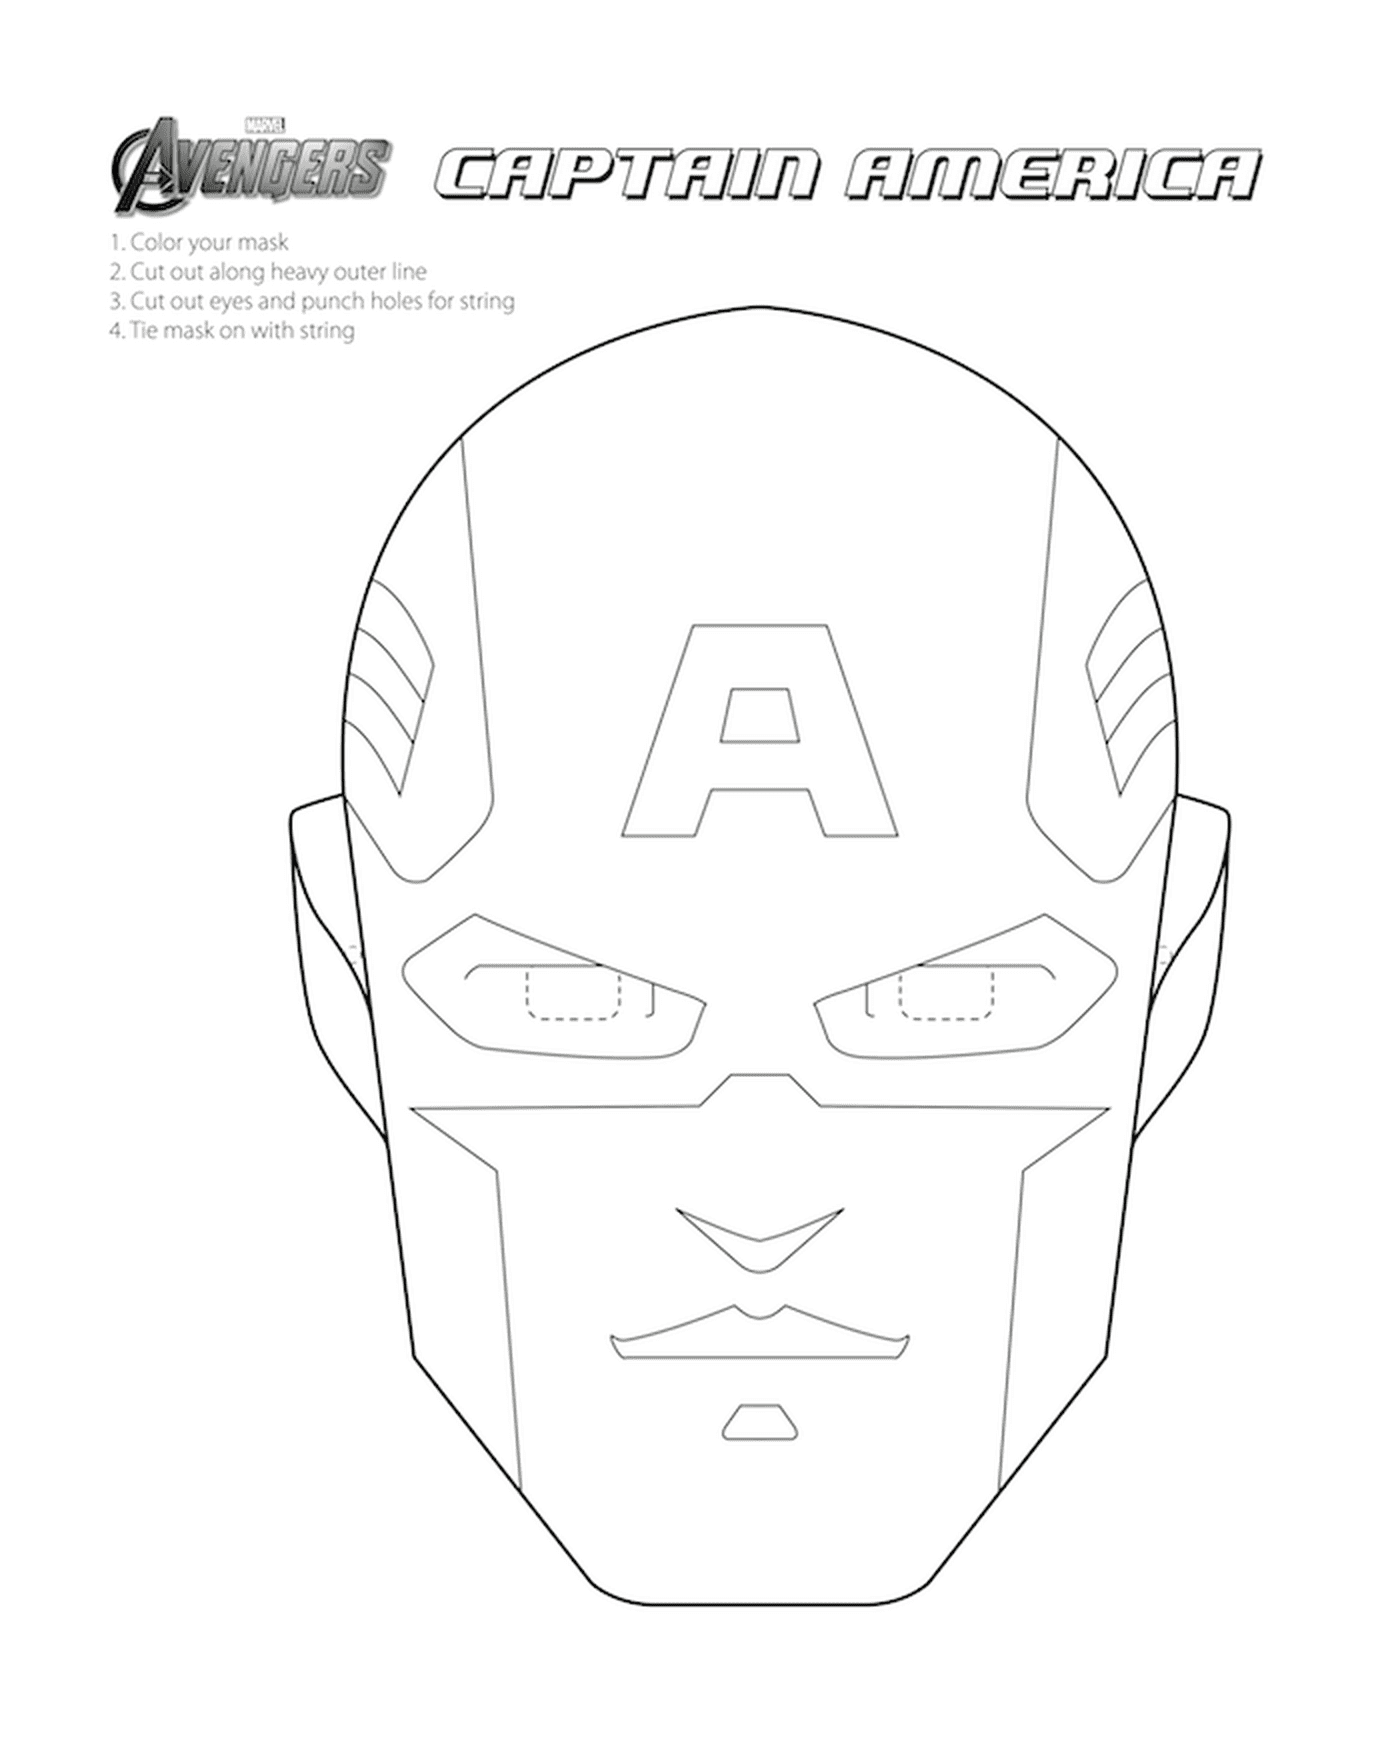   Un masque de Captain America 